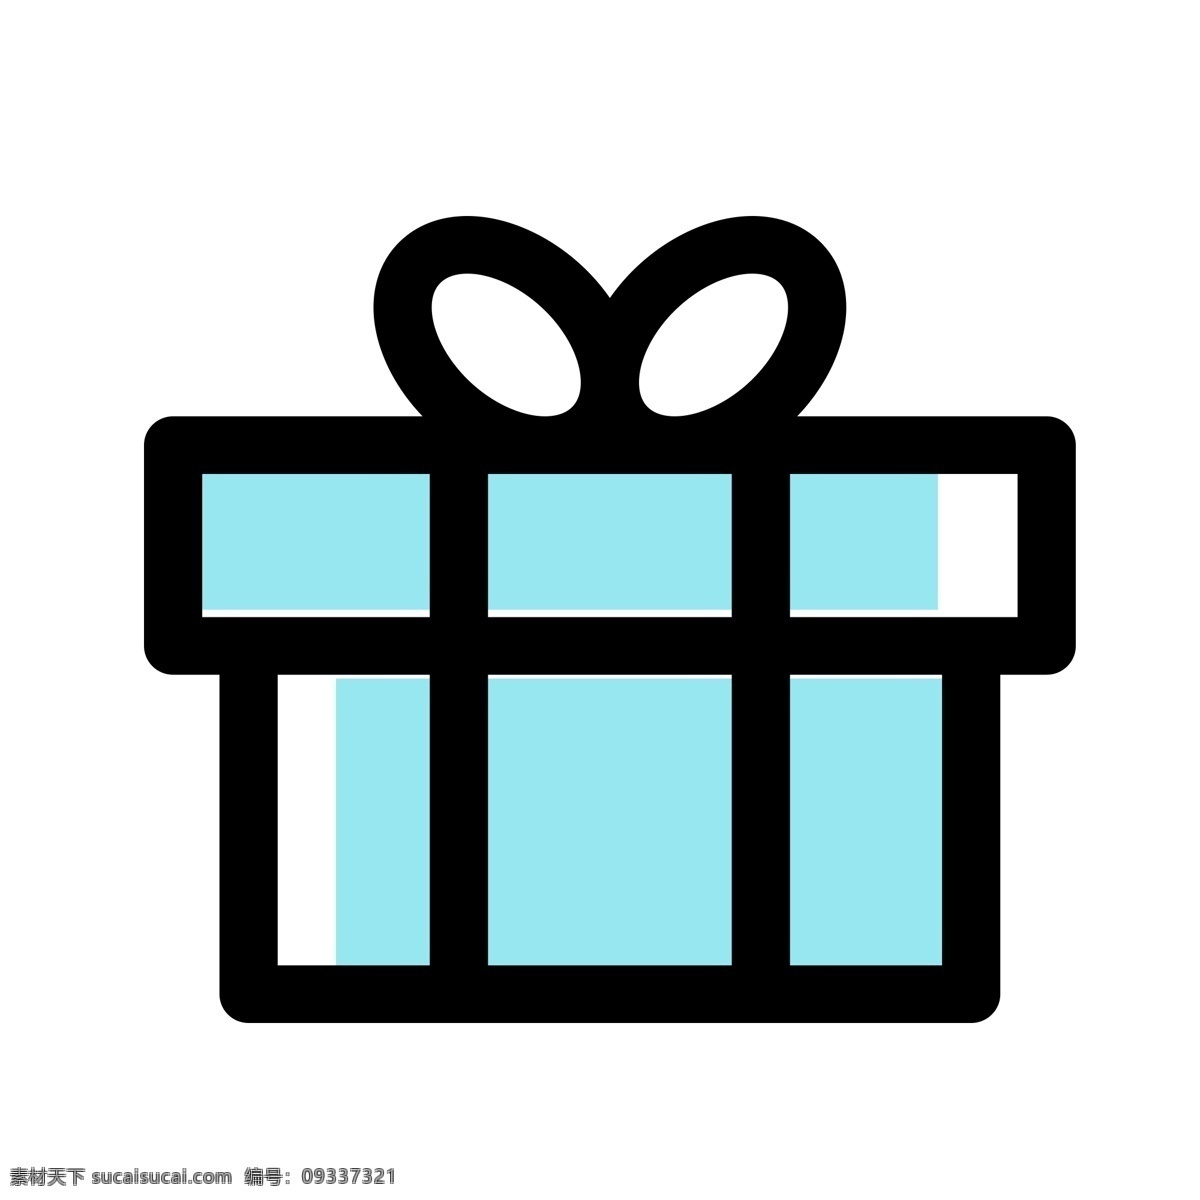 扁平化礼物 礼物盒 扁平化ui ui图标 手机图标 界面ui 网页ui h5图标